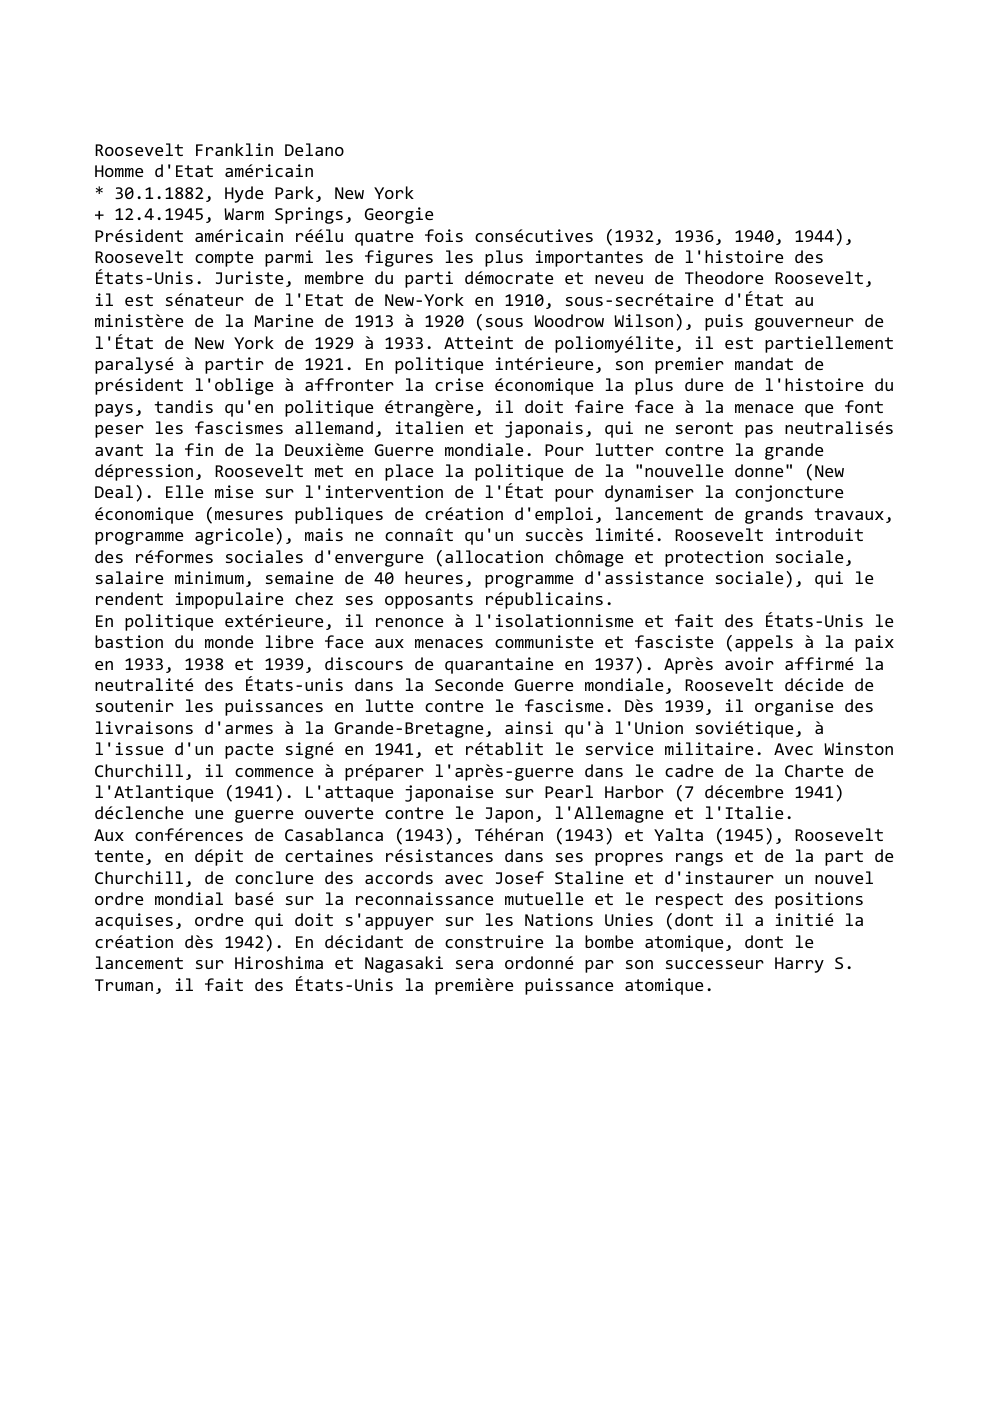 Prévisualisation du document Roosevelt Franklin Delano
Homme d'Etat américain
* 30.1.1882, Hyde Park, New York
+ 12.4.1945, Warm Springs, Georgie
Président américain réélu...